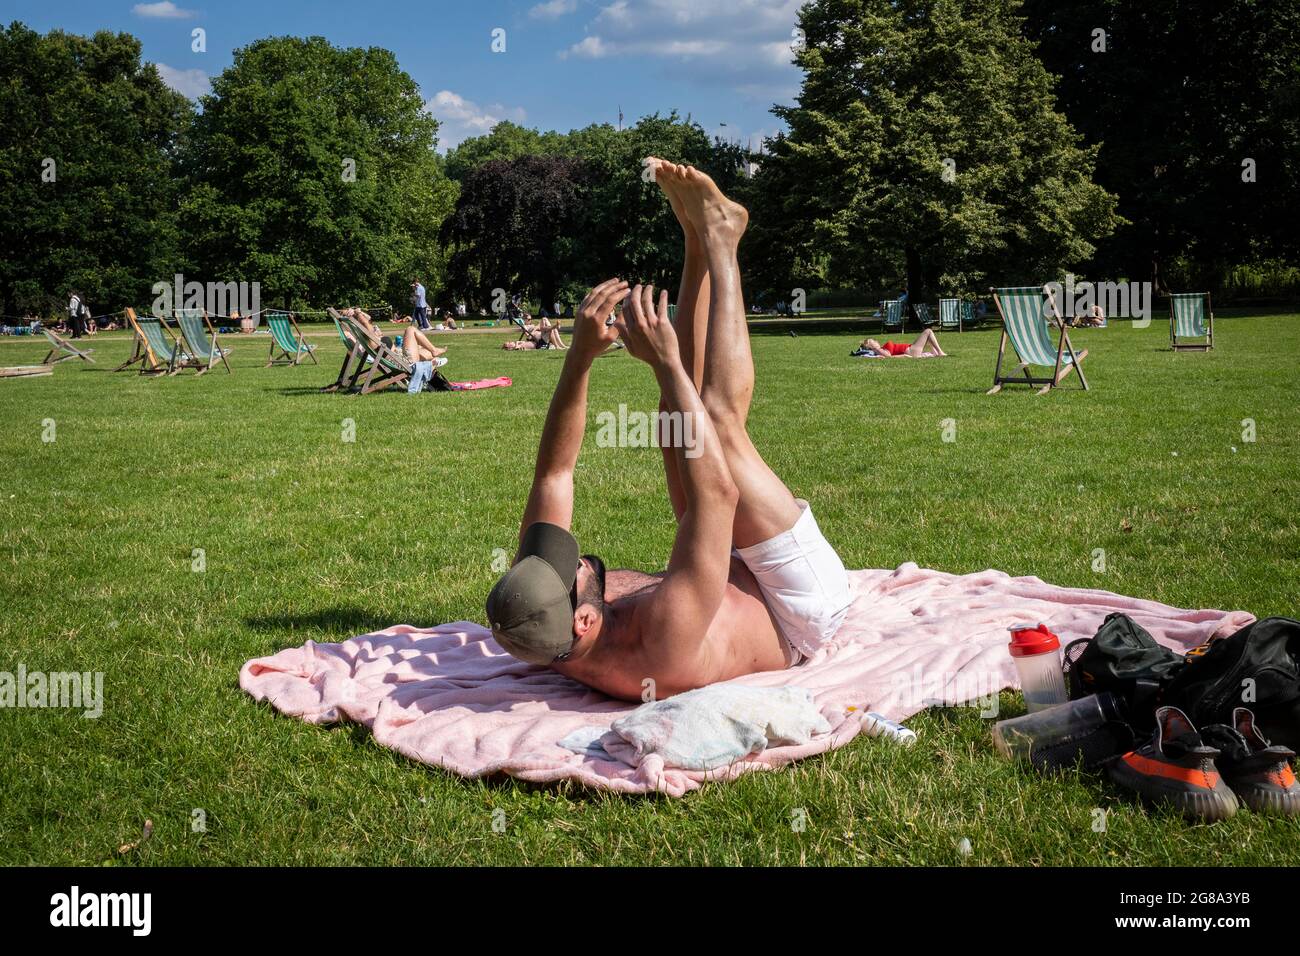 Londres, Reino Unido. 18 de julio de 2021. Clima en el Reino Unido - Un hombre haciendo ejercicio bajo el sol en St James's Park en el día más caluroso del año cuando las temperaturas superan los 31C. Crédito: Stephen Chung / Alamy Live News Foto de stock